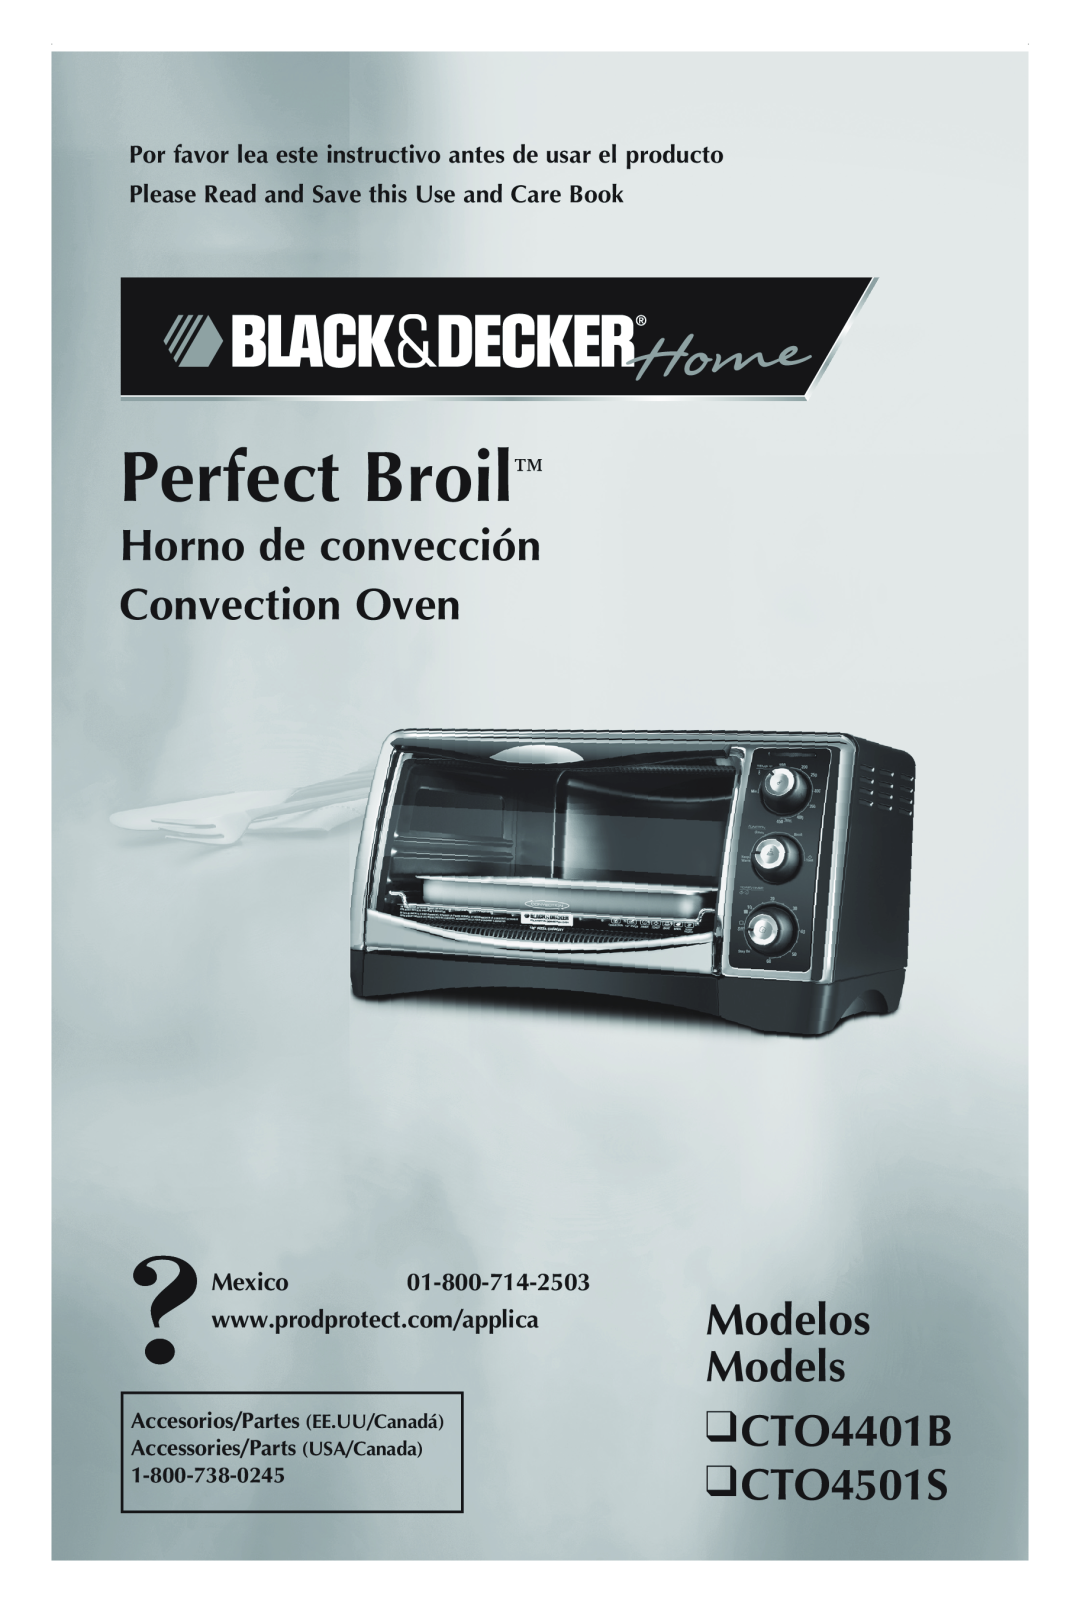 Black & Decker manual Horno de convección Convection Oven, Modelos Models CTO4401B CTO4501S, Perfect Broil 